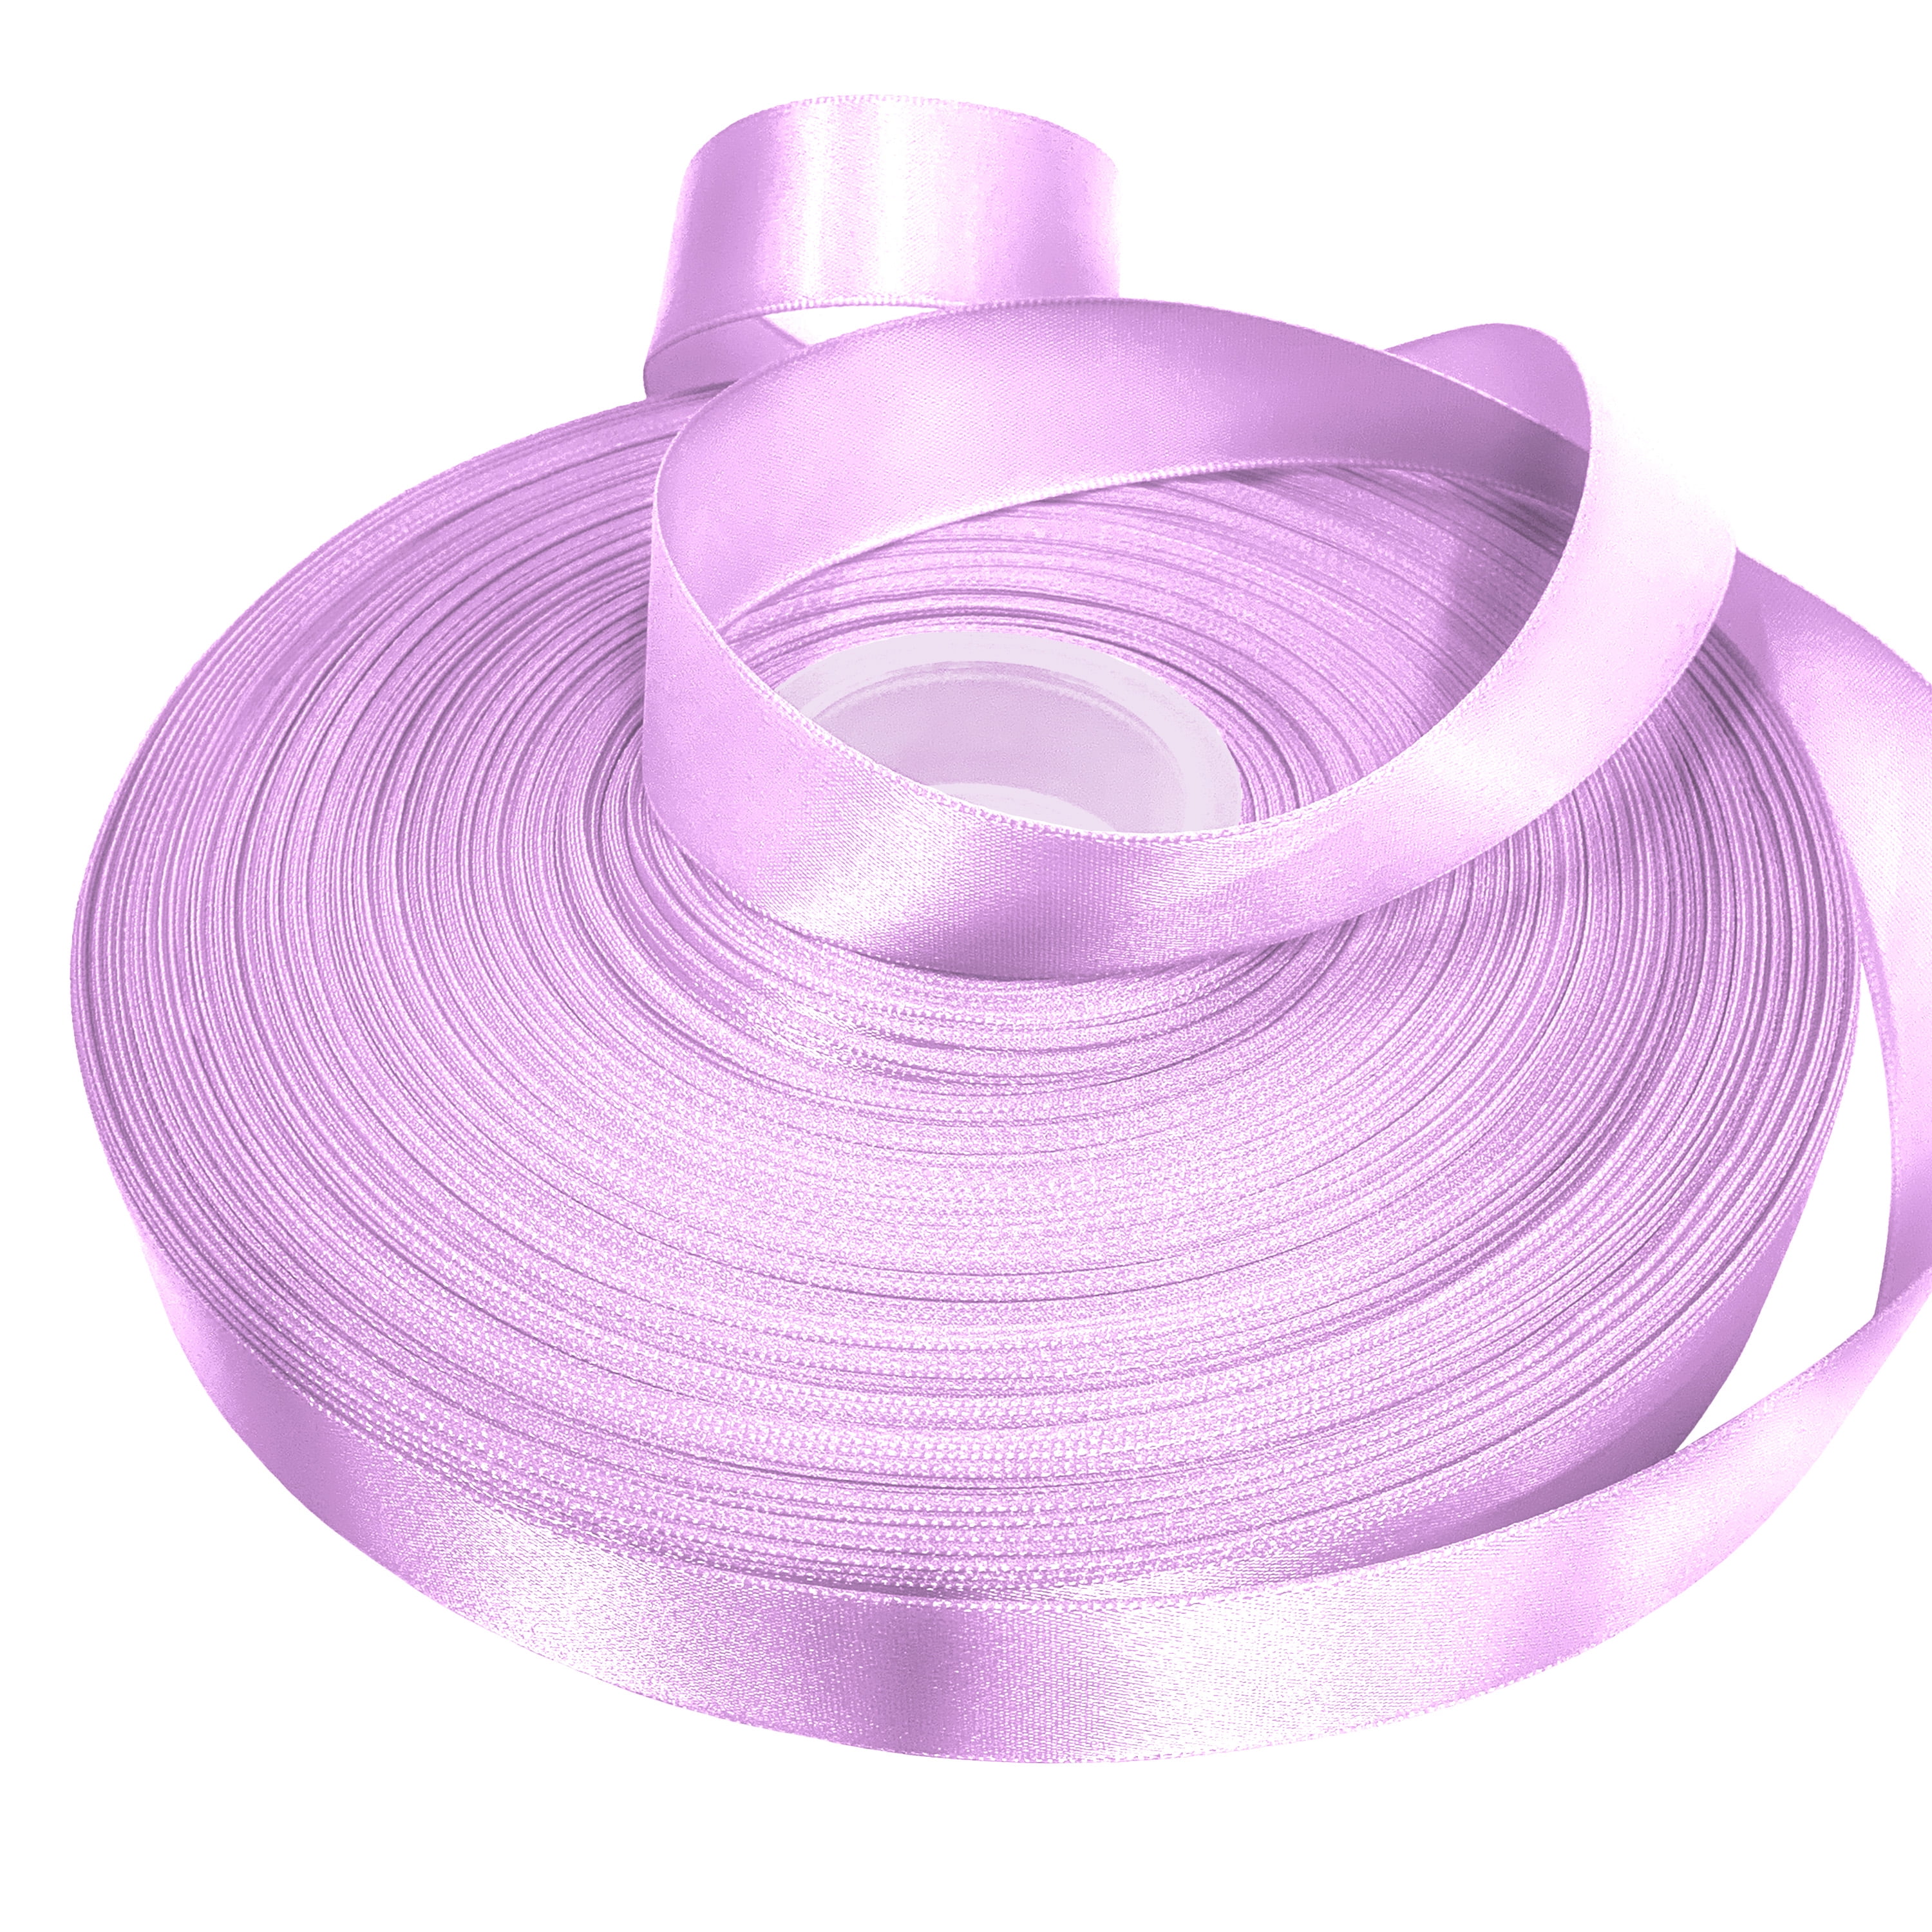 Bulk Ribbon Single Face Satin Light Purple (15mmx50m)